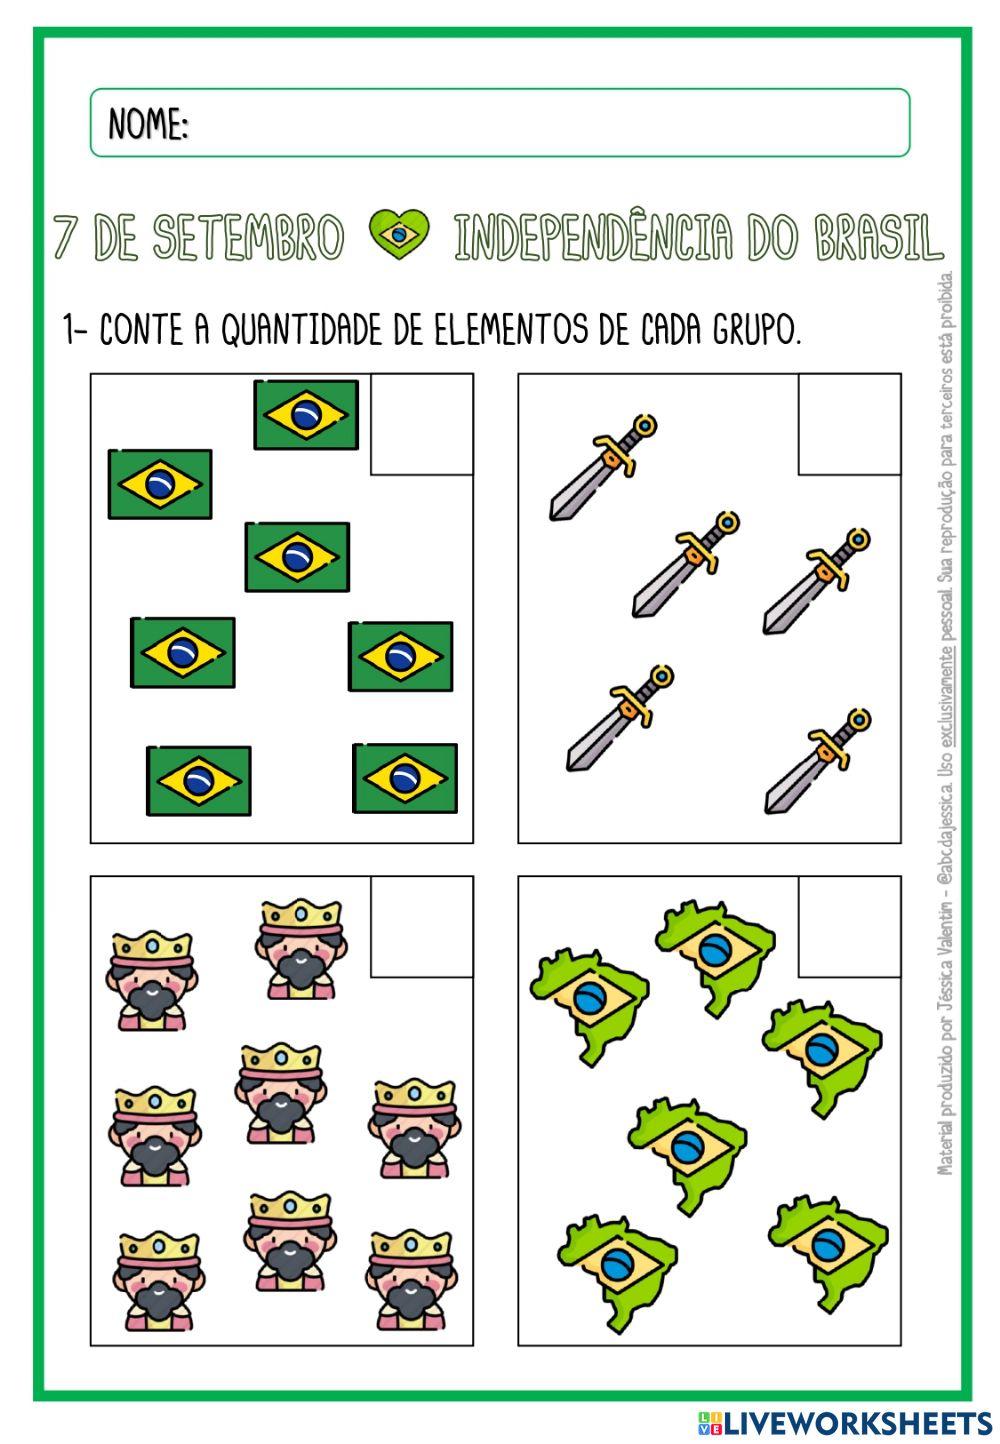 Contagem - Independência do Brasil